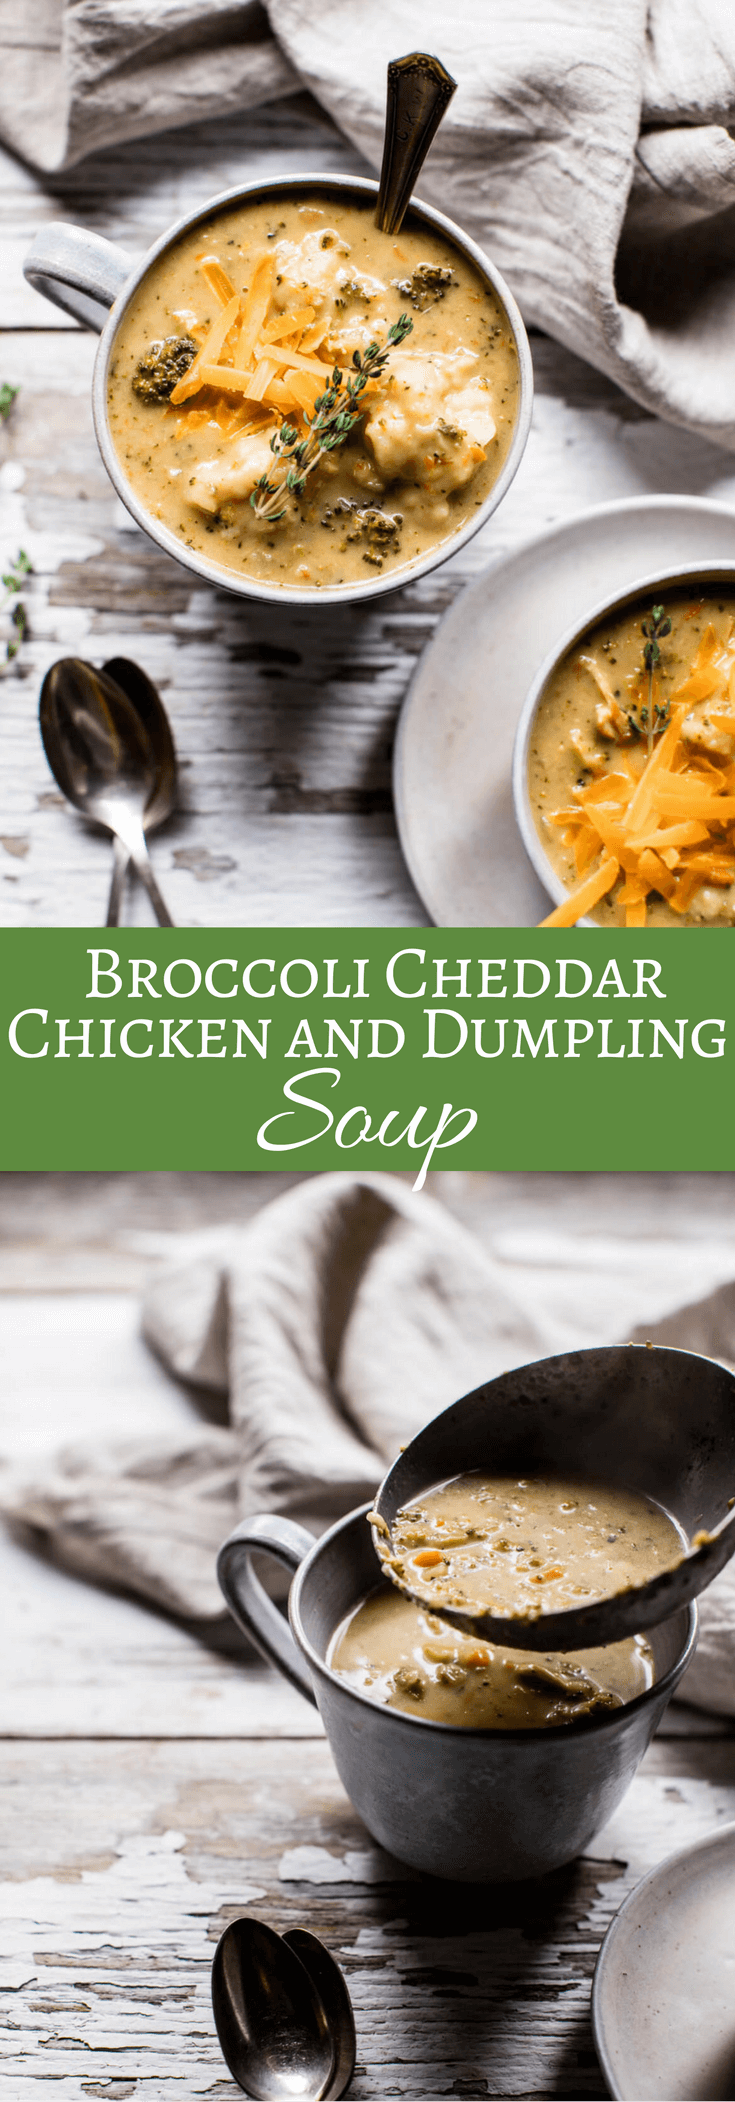 Broccoli Cheddar Chicken and Dumpling Soup | halfbakedharvest.com @hbharvest